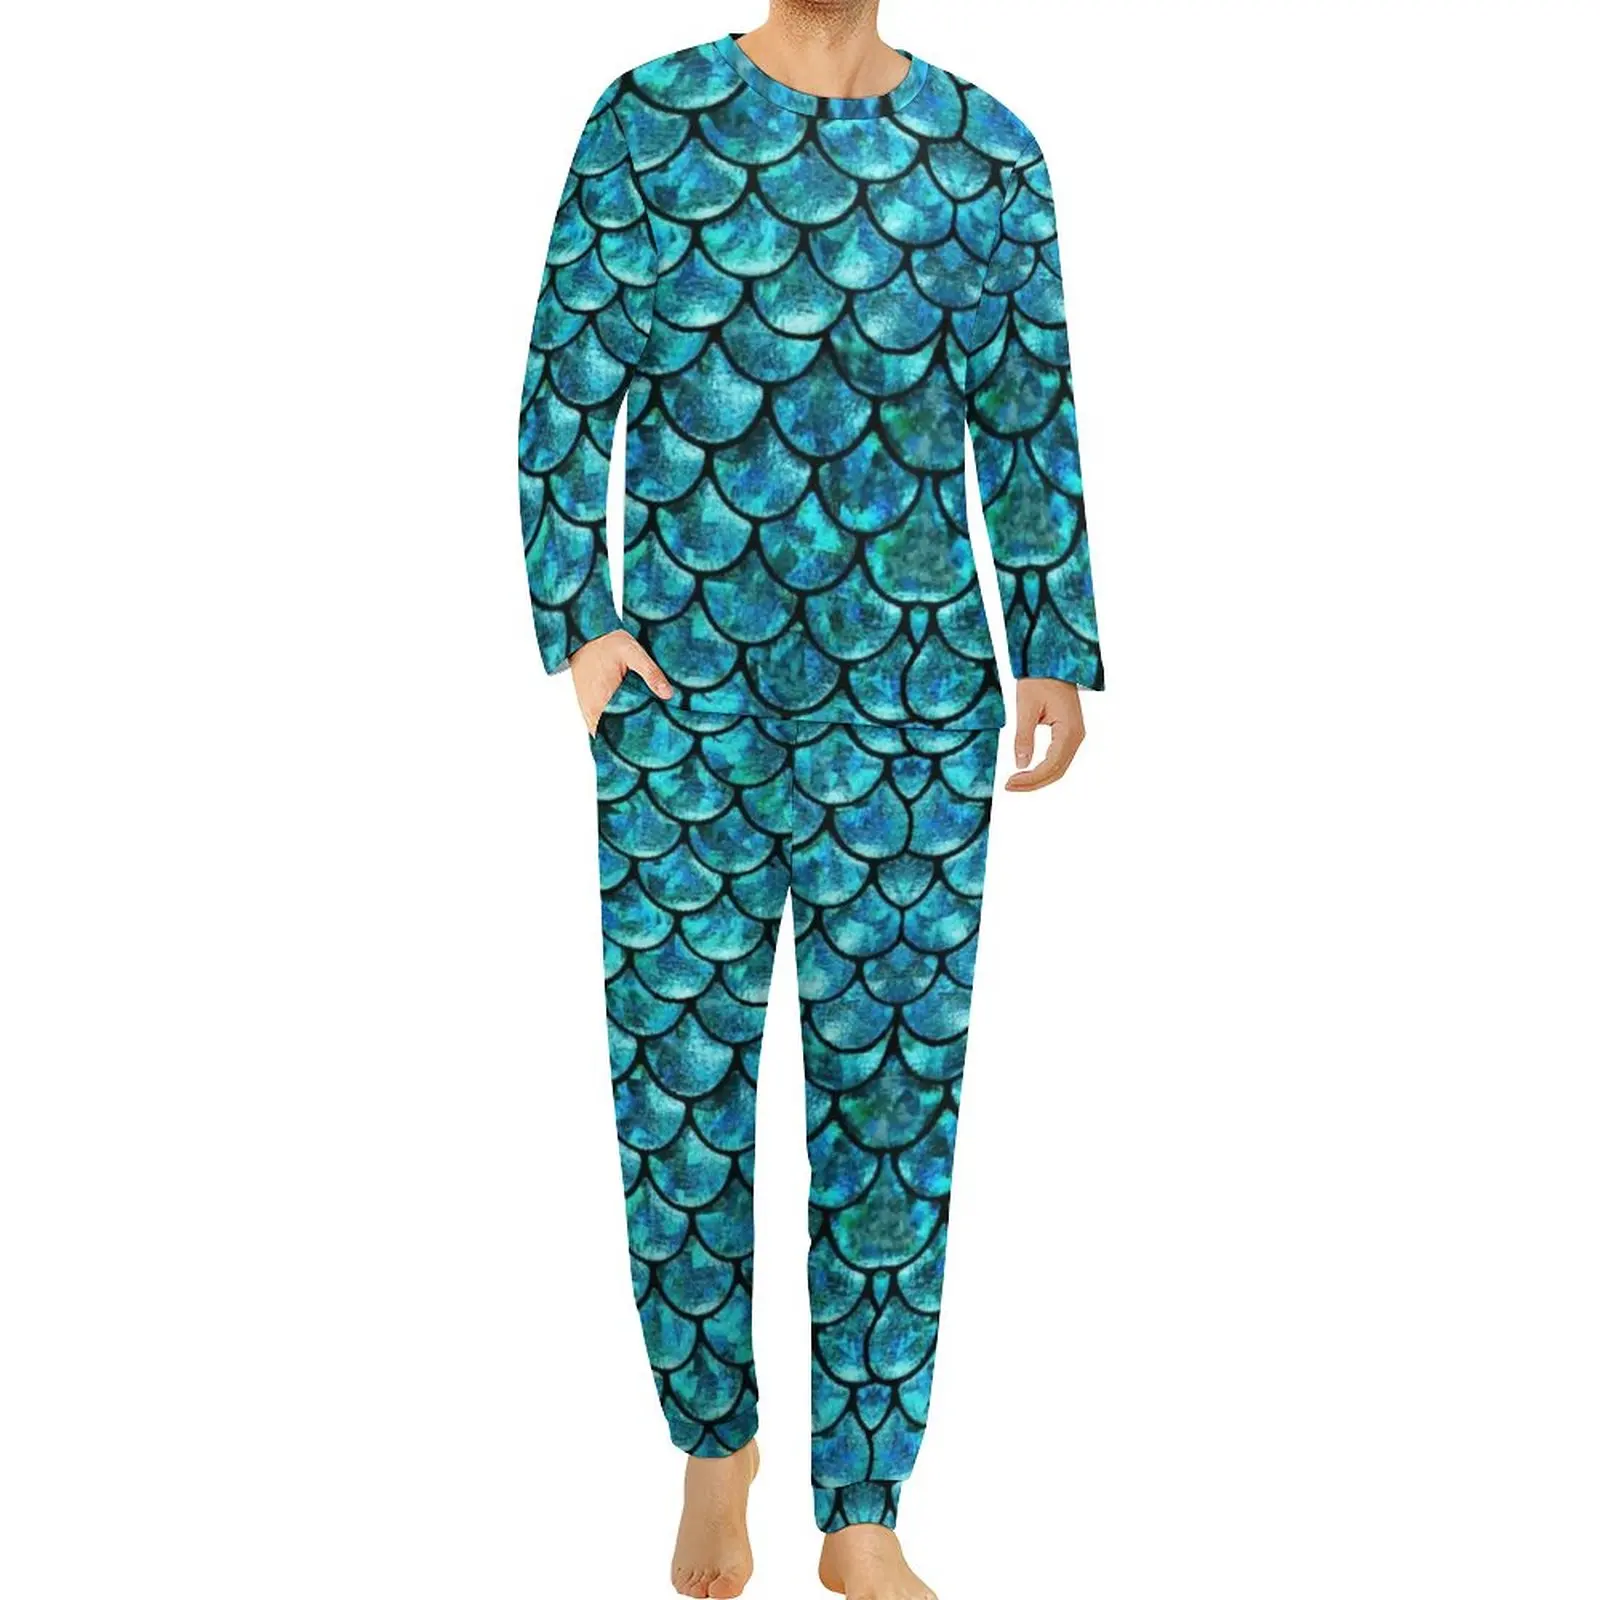 Mermaid Scales Pajamas Spring Animal Print Leisure Home Suit Mens 2 Pieces Custom Long-Sleeve Retro Oversized Pajama Sets